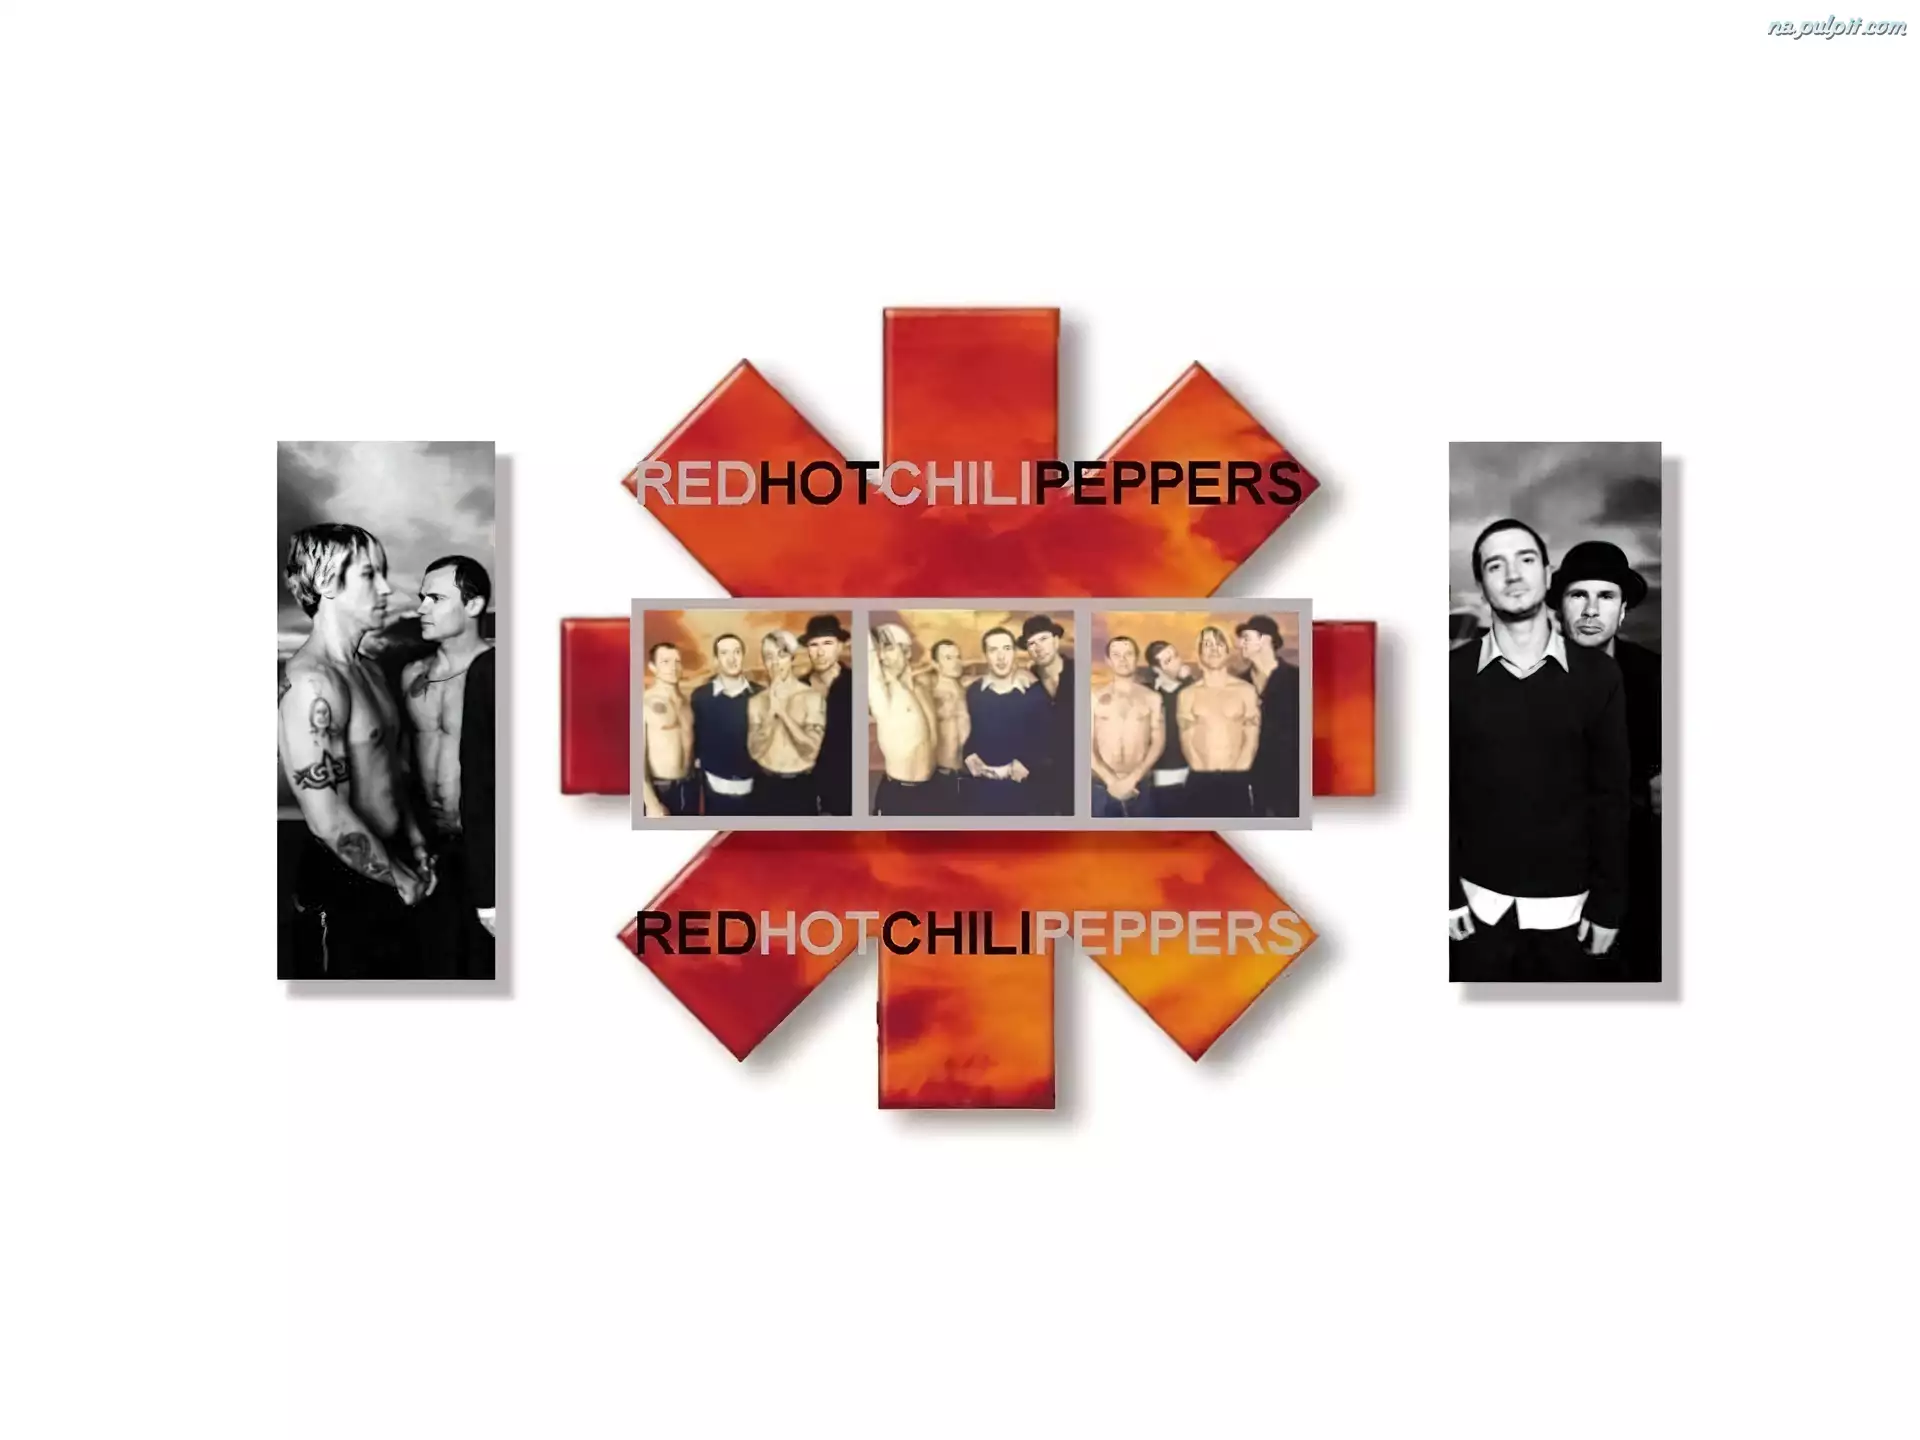 Red Hot Chili Peppers, zdjęcia, zespół , znaczek